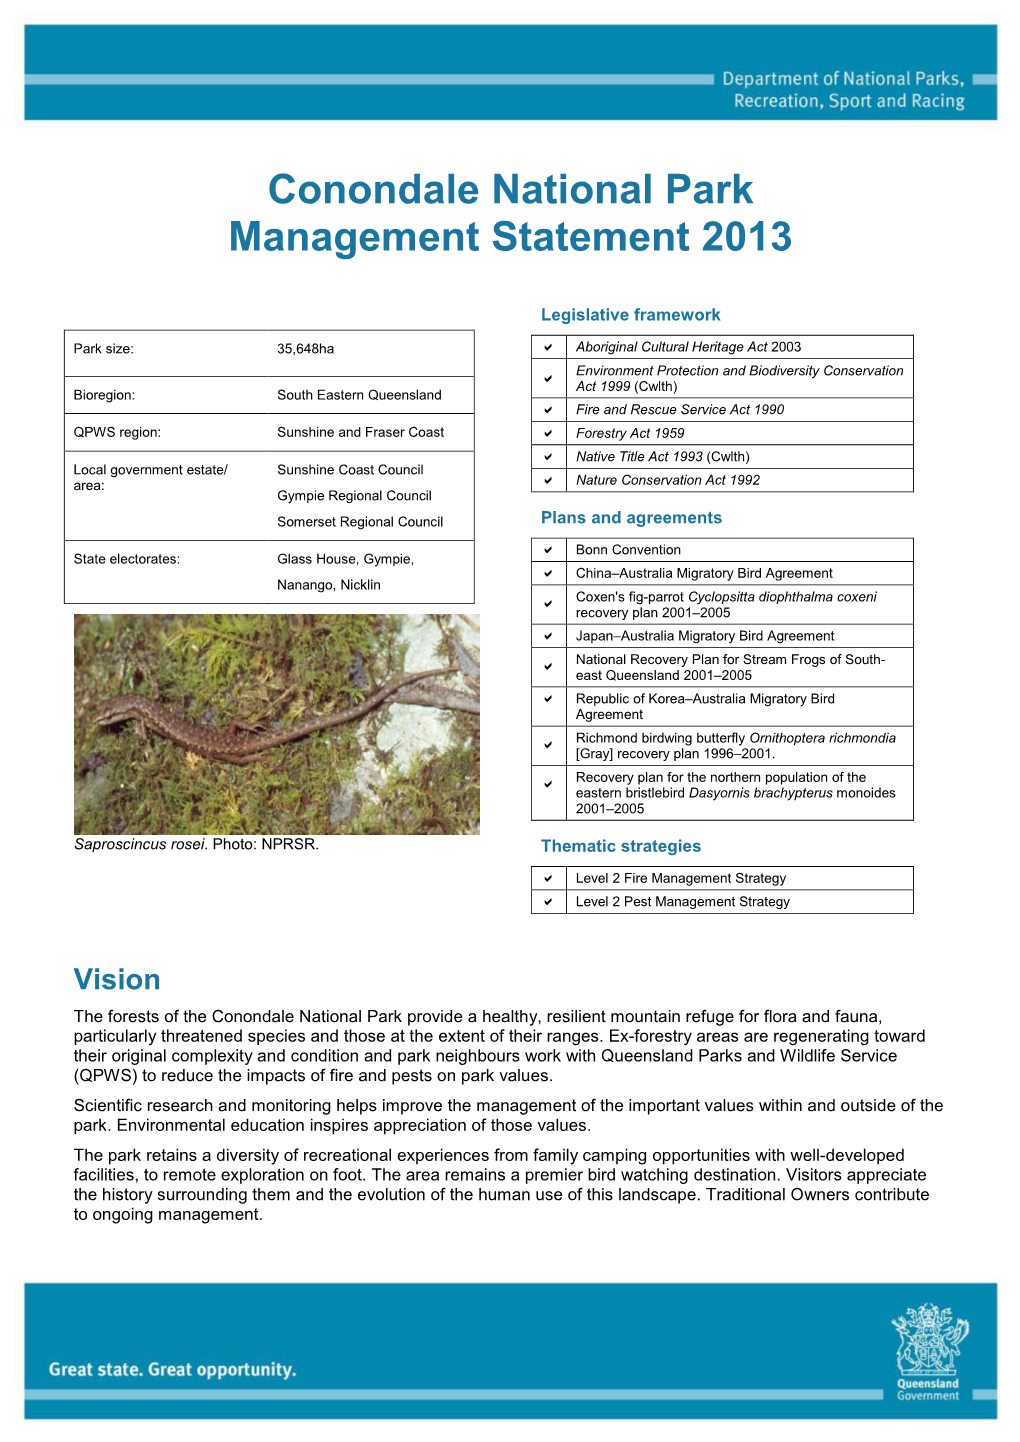 Conondale National Park Management Statement 2013